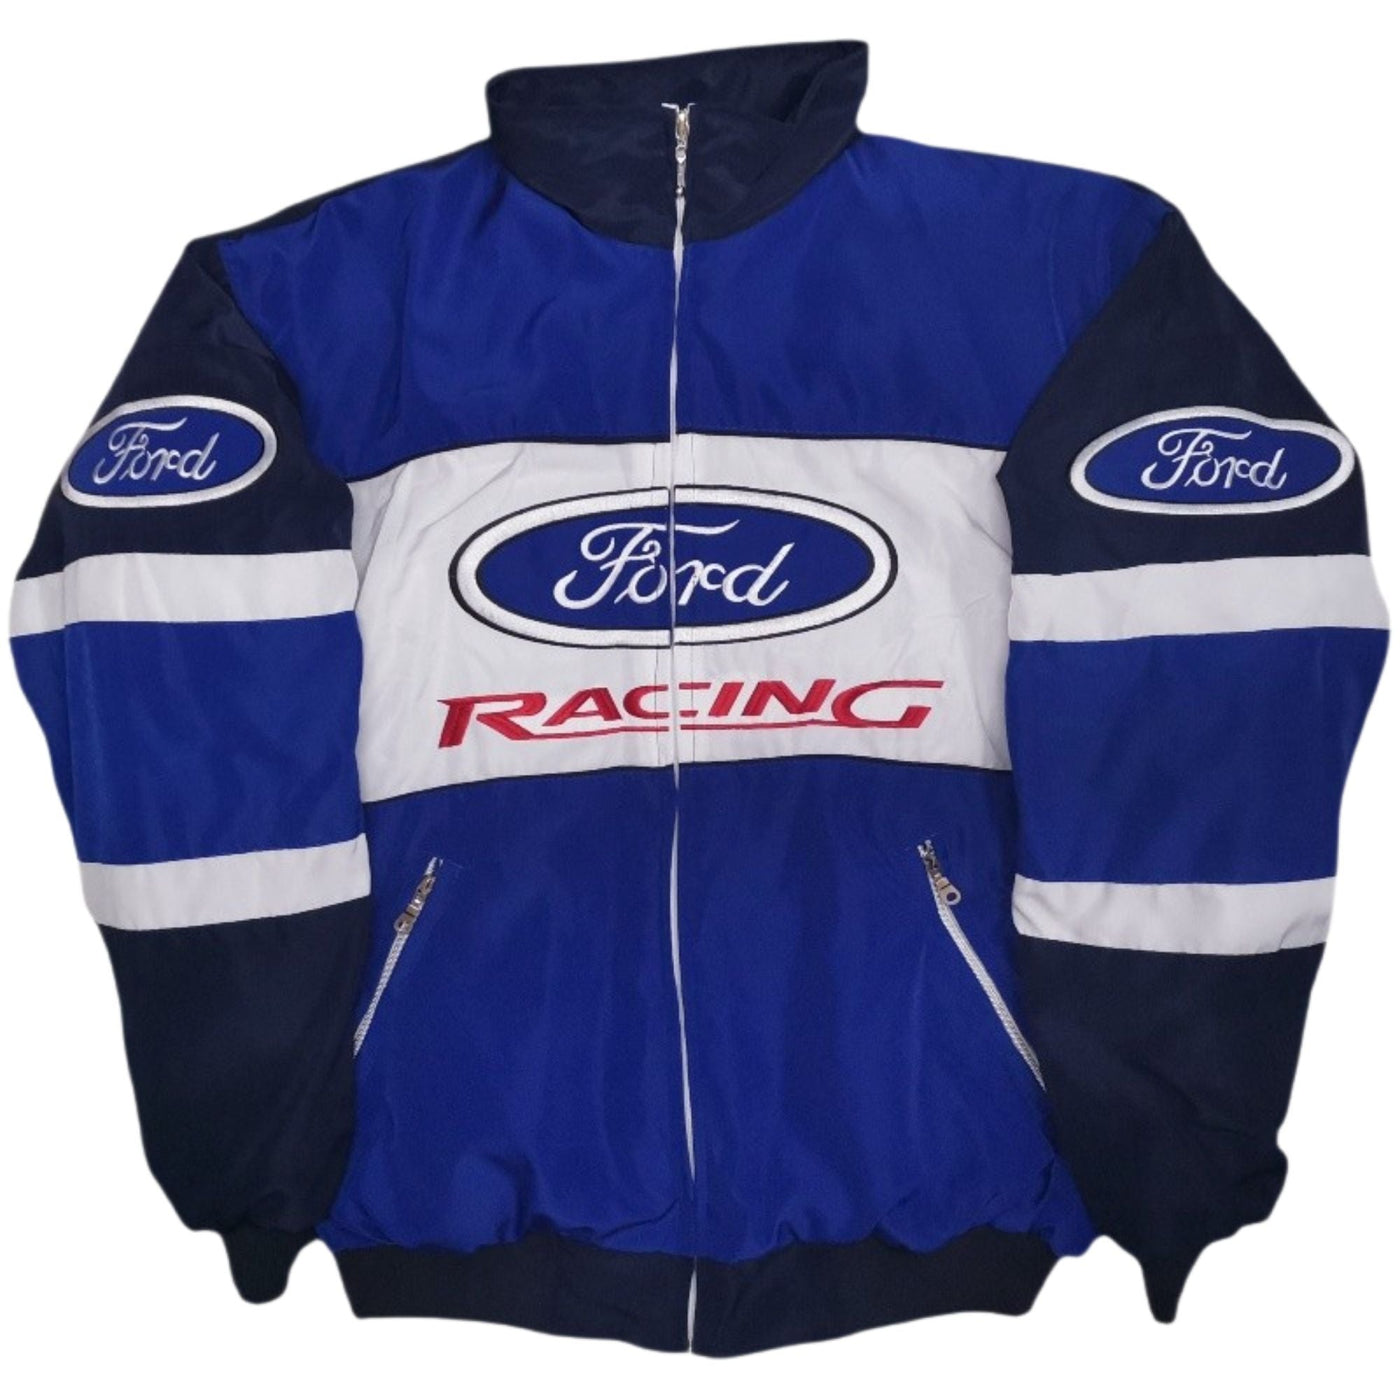 Vintage Racing F0rd Jacket